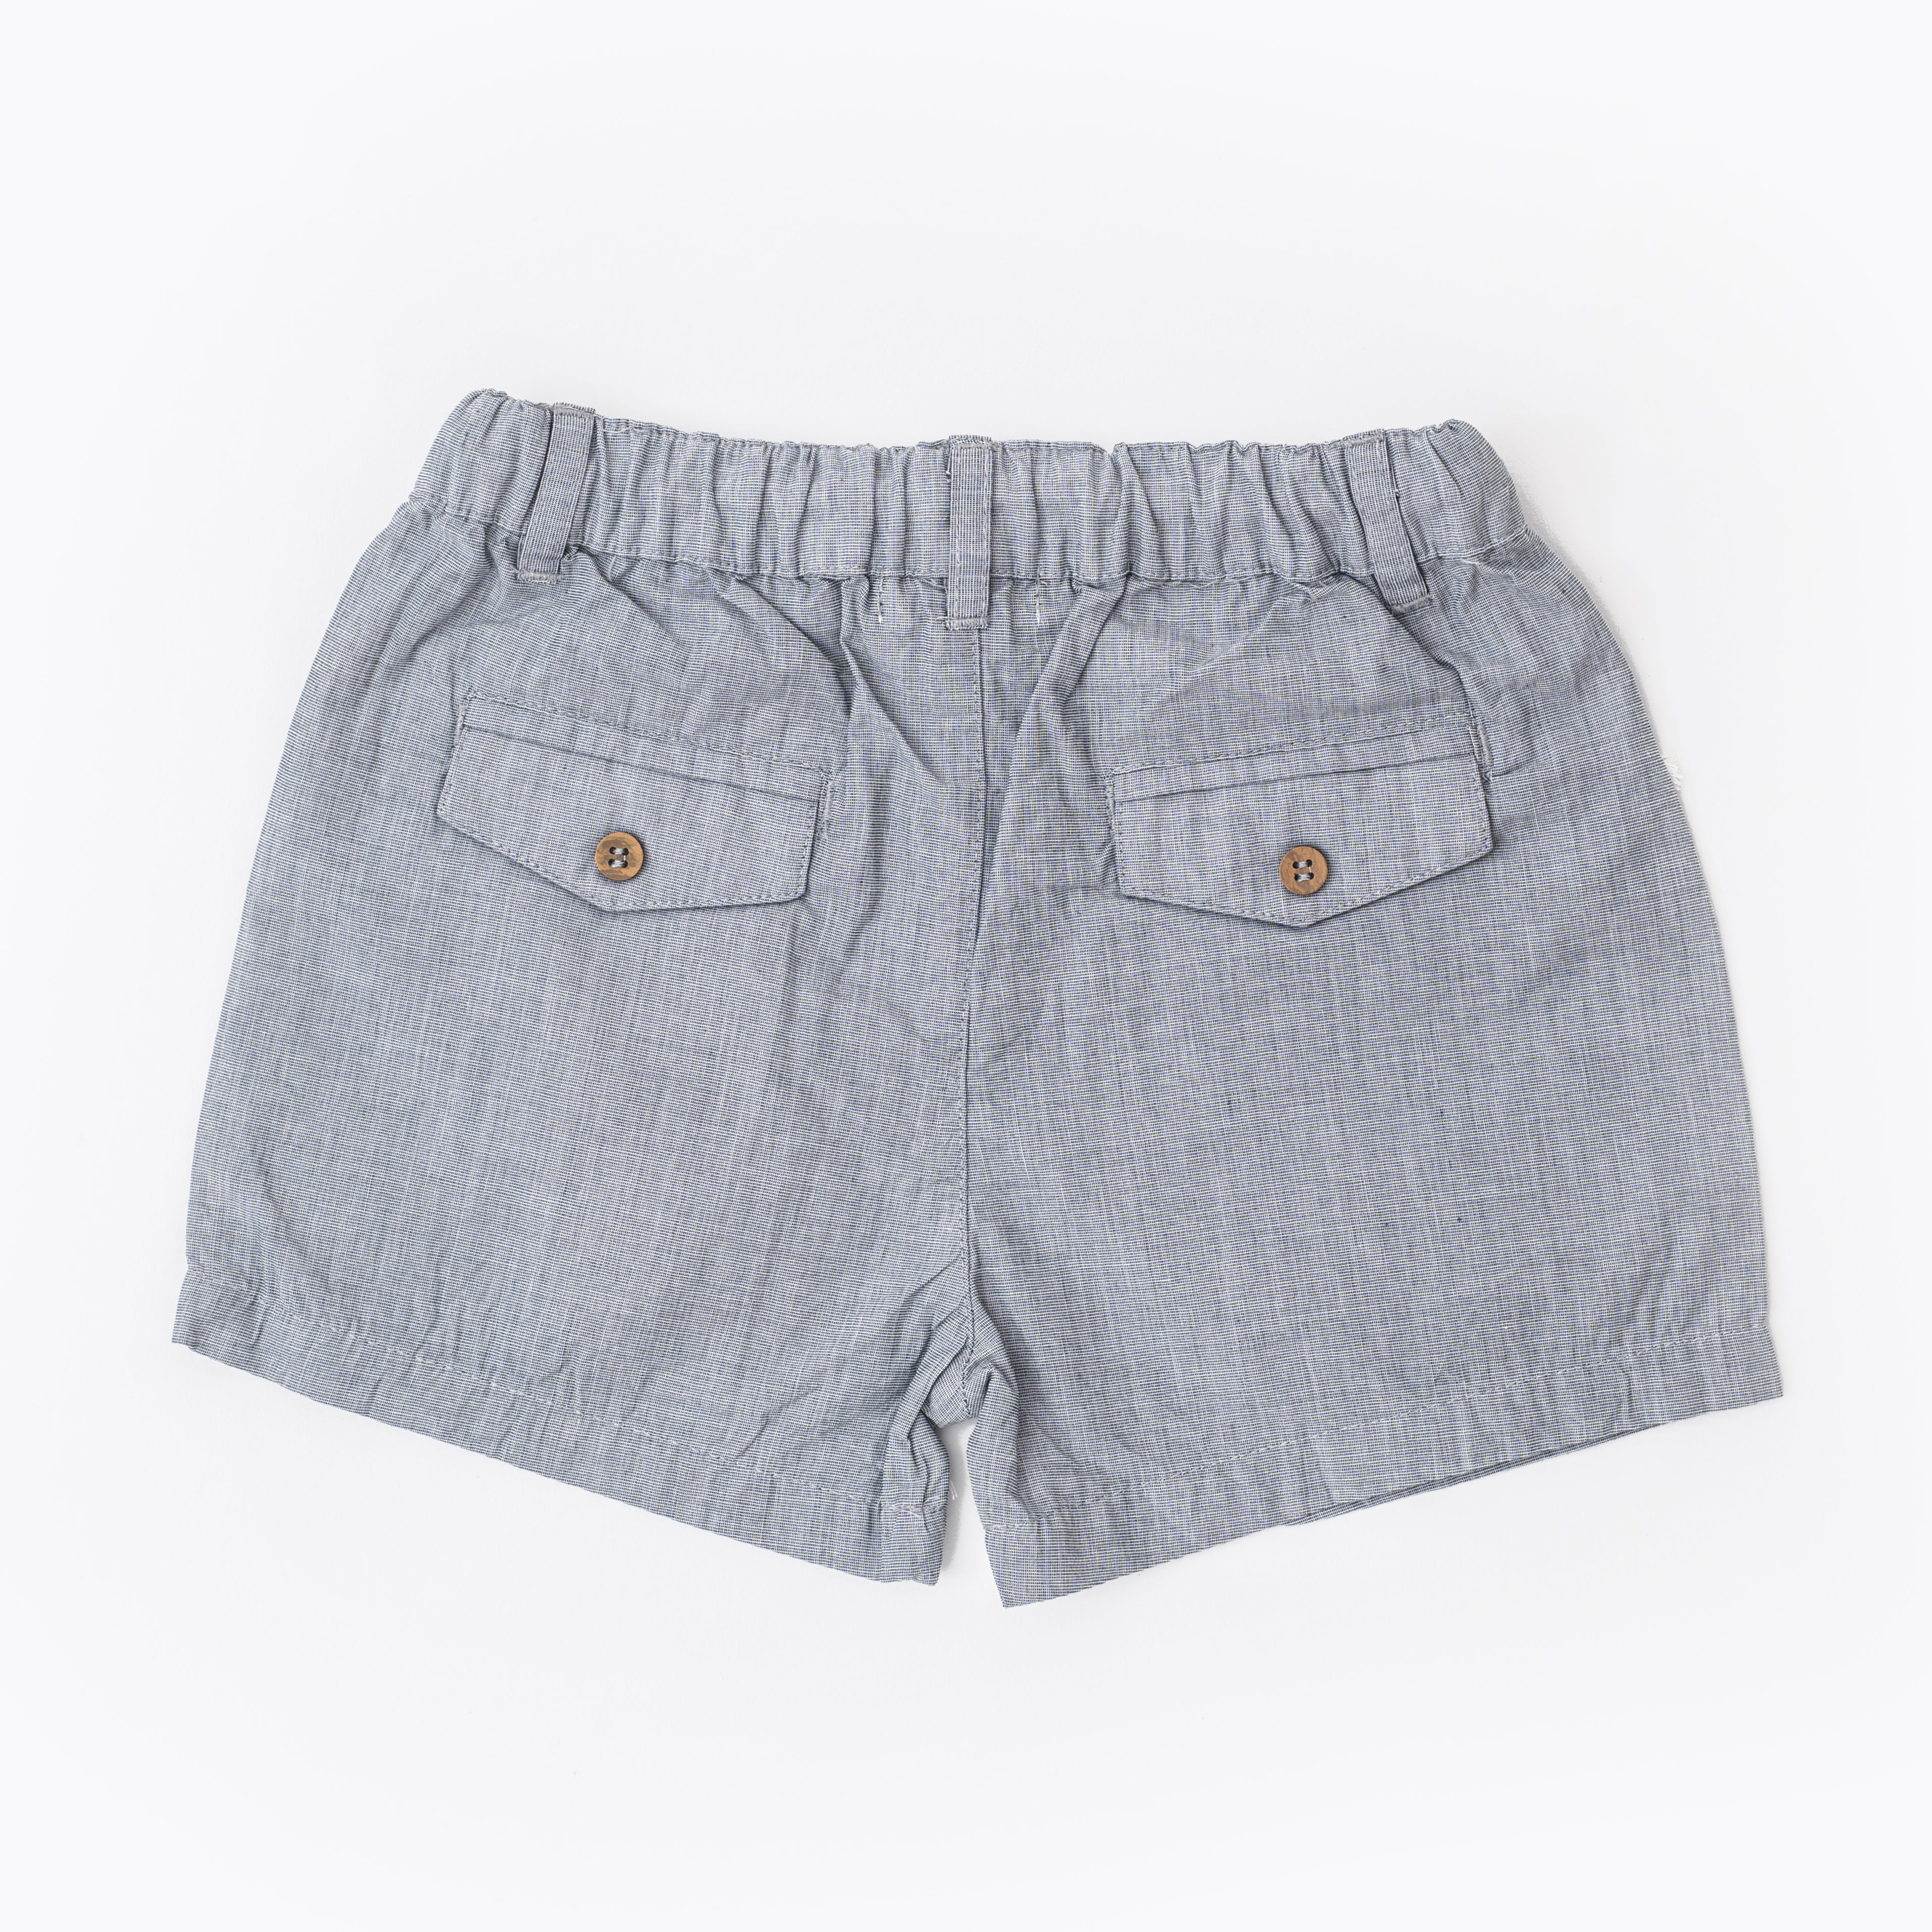 Grey melange shorts